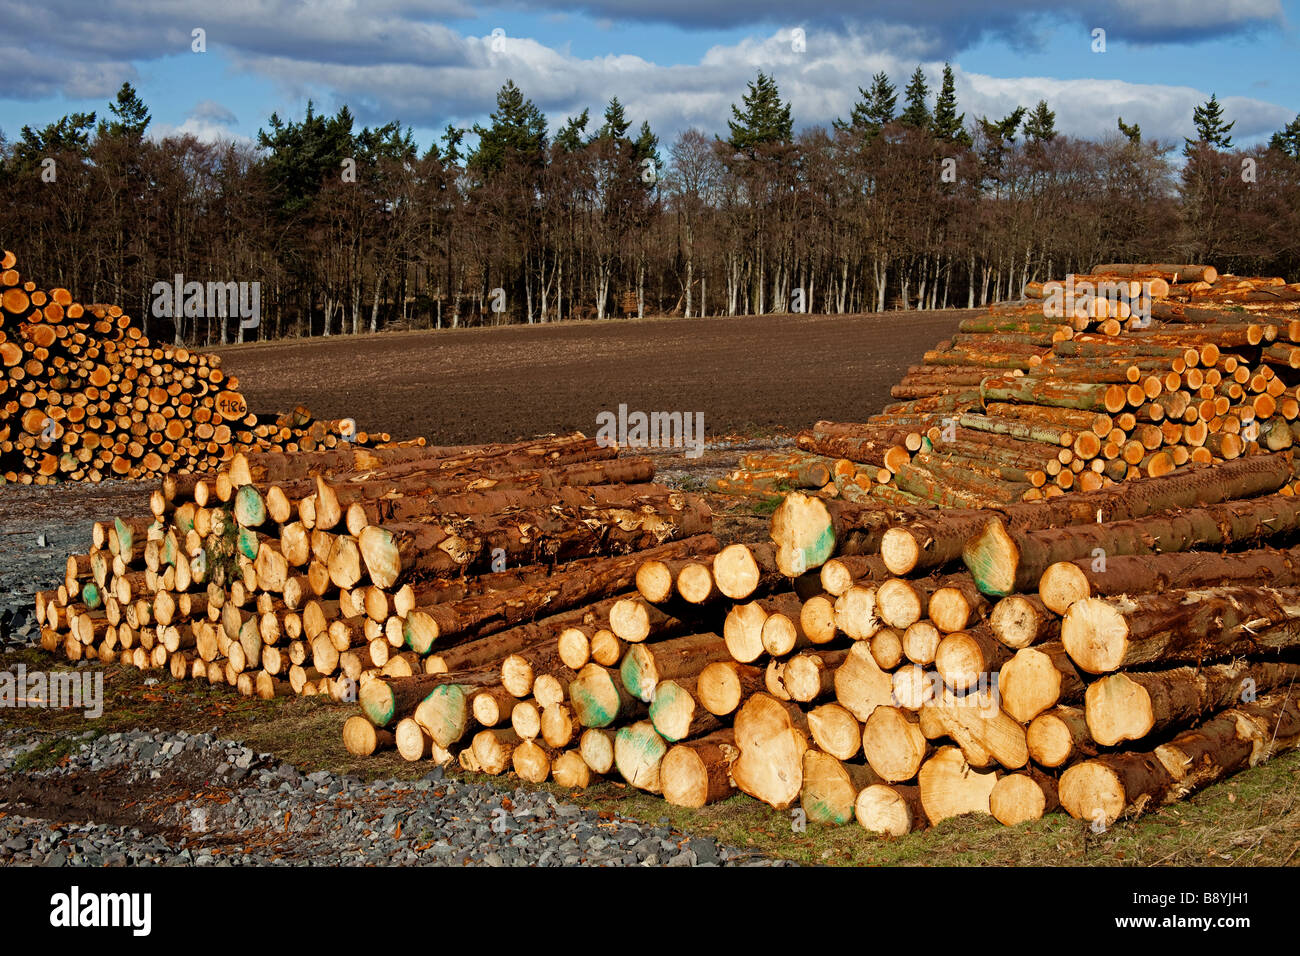 Haufen von Nadelbaum Holz Protokolle, Perthshire, Schottland, UK, Europa Stockfoto